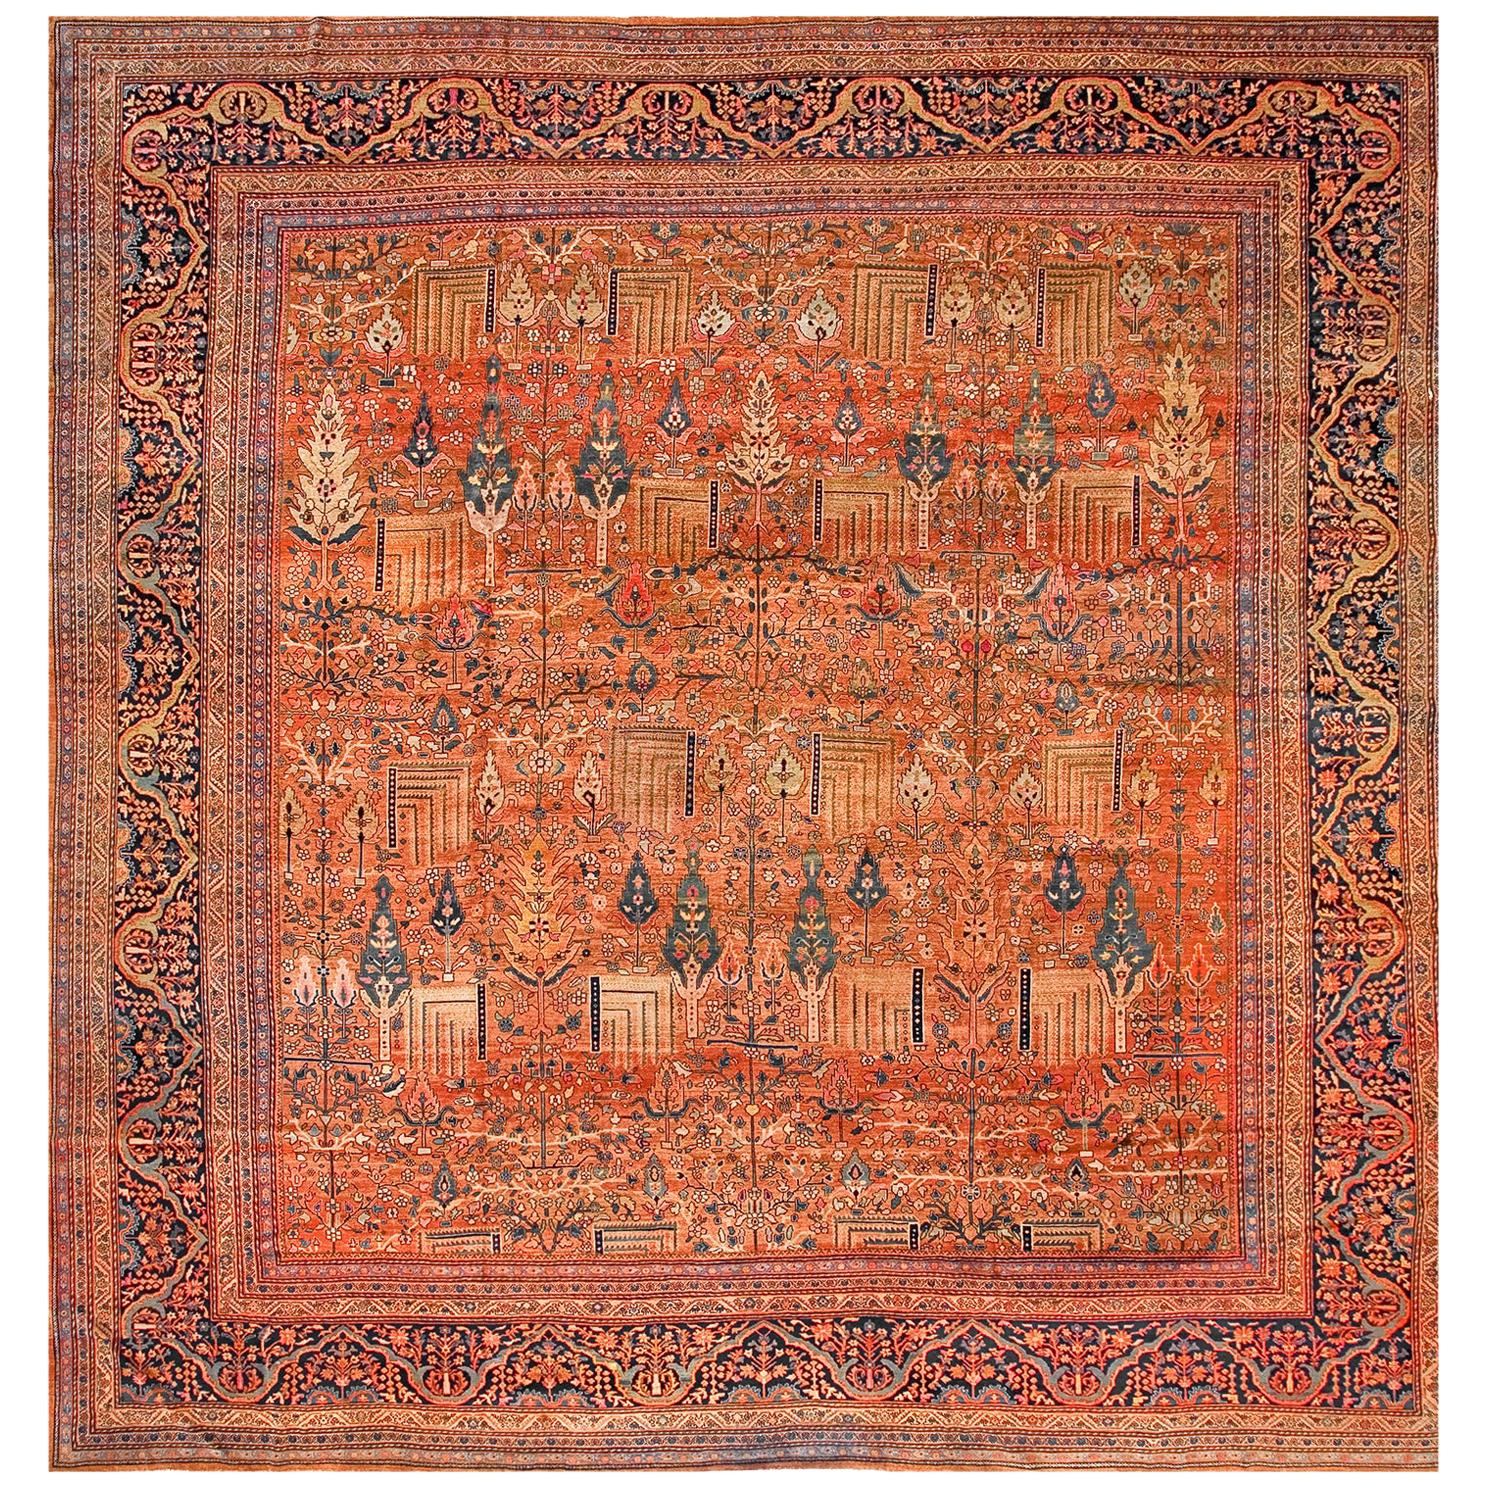 19th Century Persian Sarouk Farahan Carpet ( 14' x 14'4" - 427 x 437 )